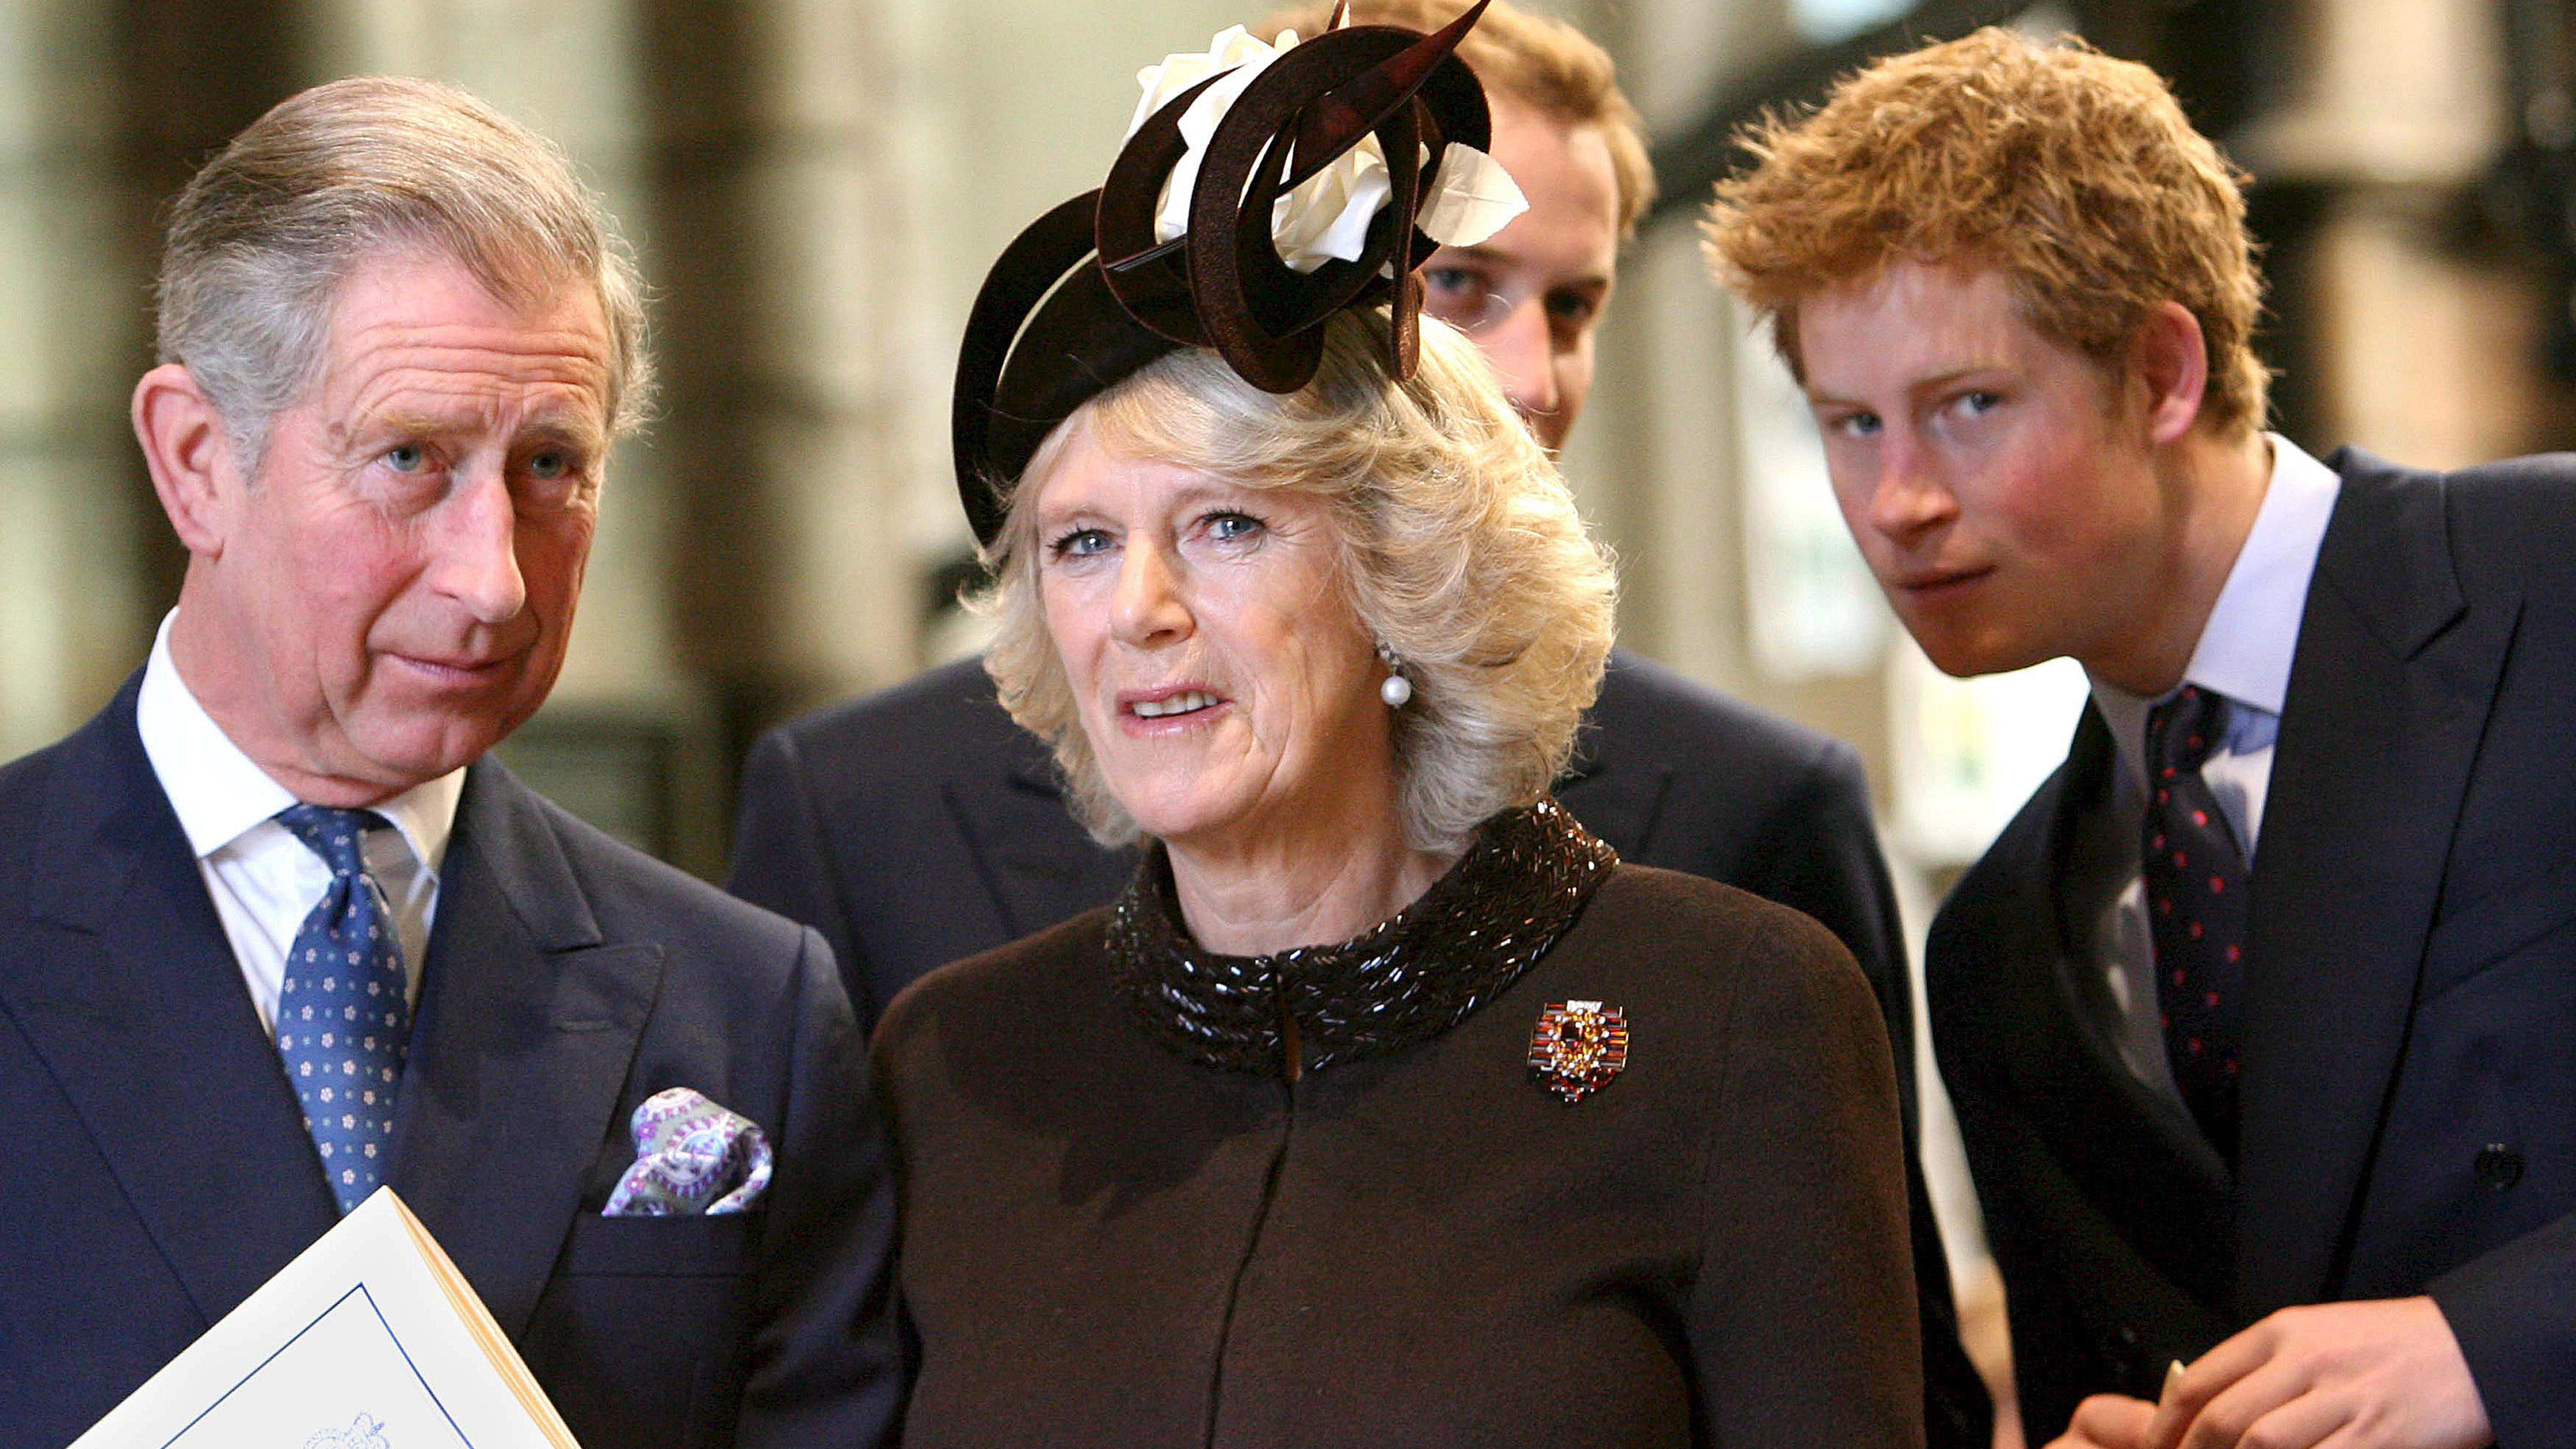 ARCHIV - 19.11.2007, Großbritannien, London: Charles (l), damals Prinz von Wales, seine Frau Camilla und seine Söhne William (hinten, verdeckt) und Harry (r) nehmen an der Feier zur Diamantenen Hochzeit von Königin Elisabeth II. und Prinz Philip in d